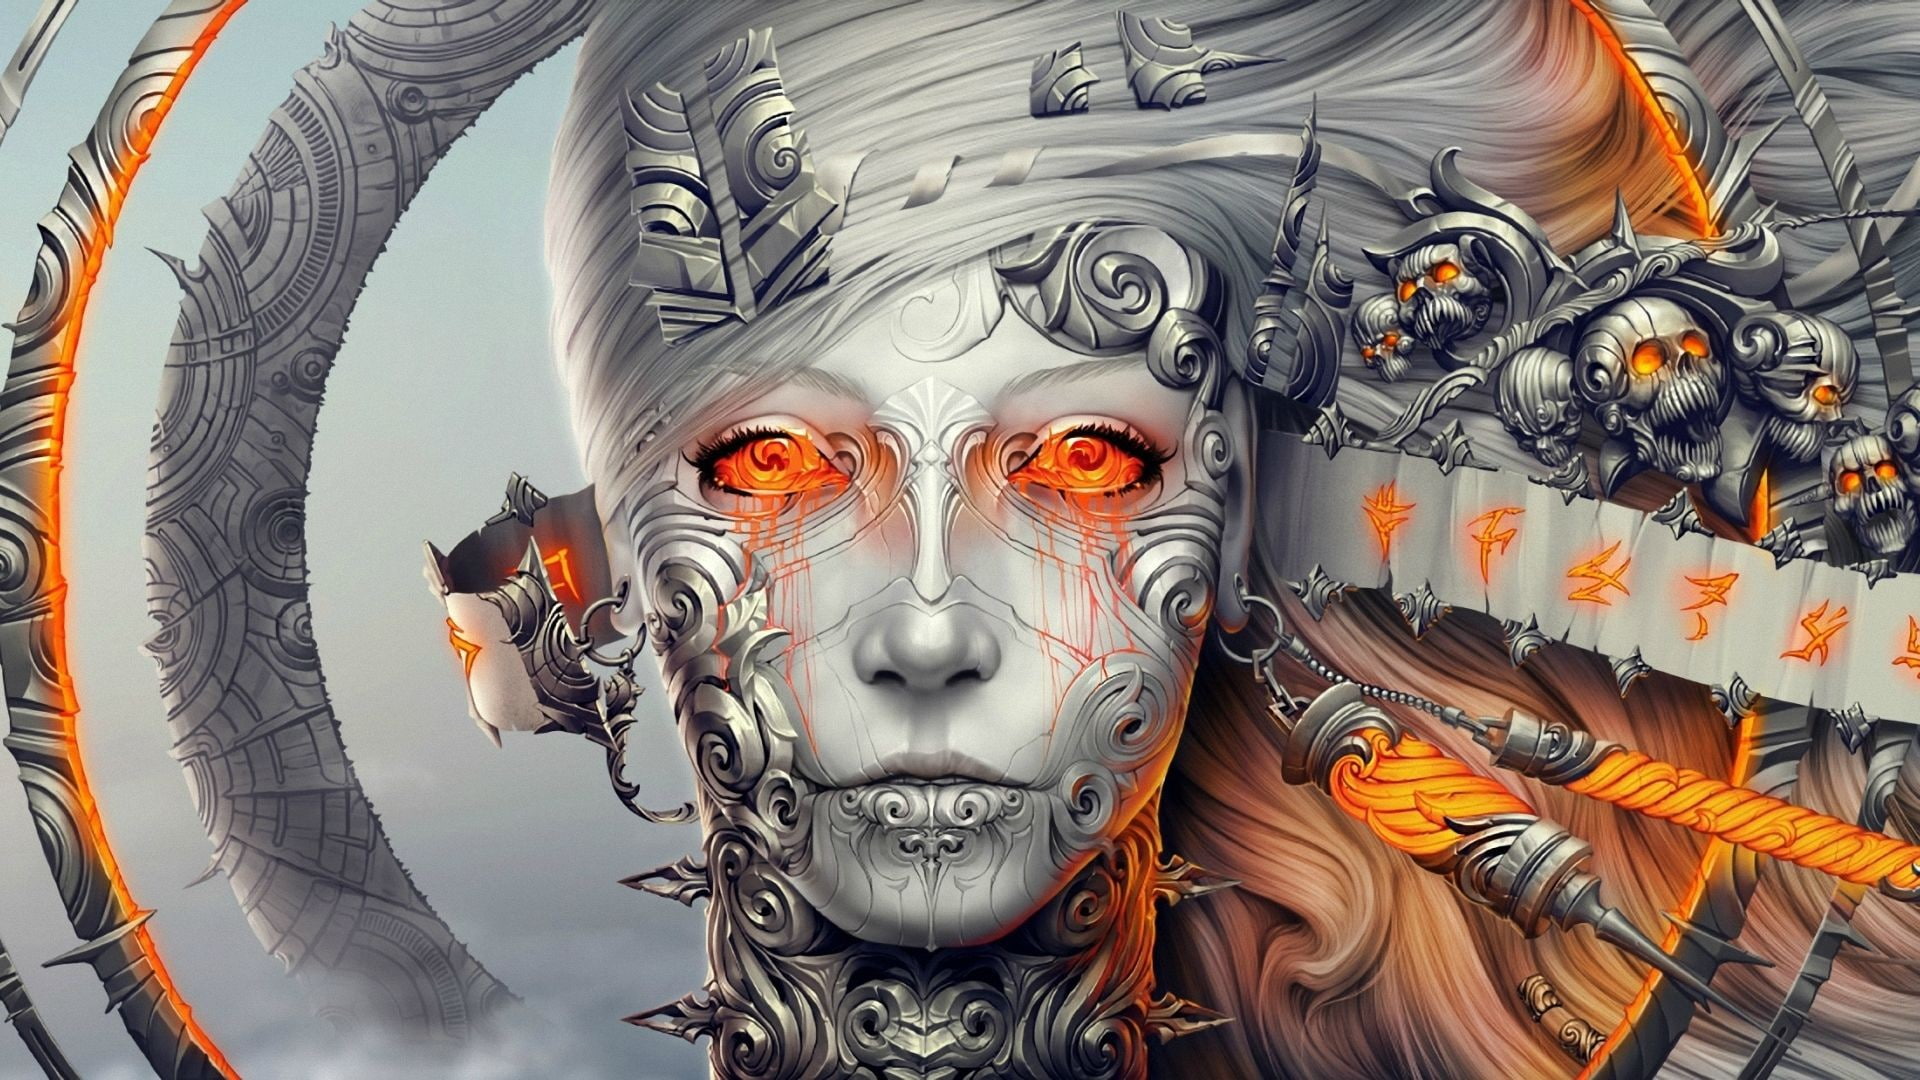 fantasy art androids planescape torment fan art robot science fiction